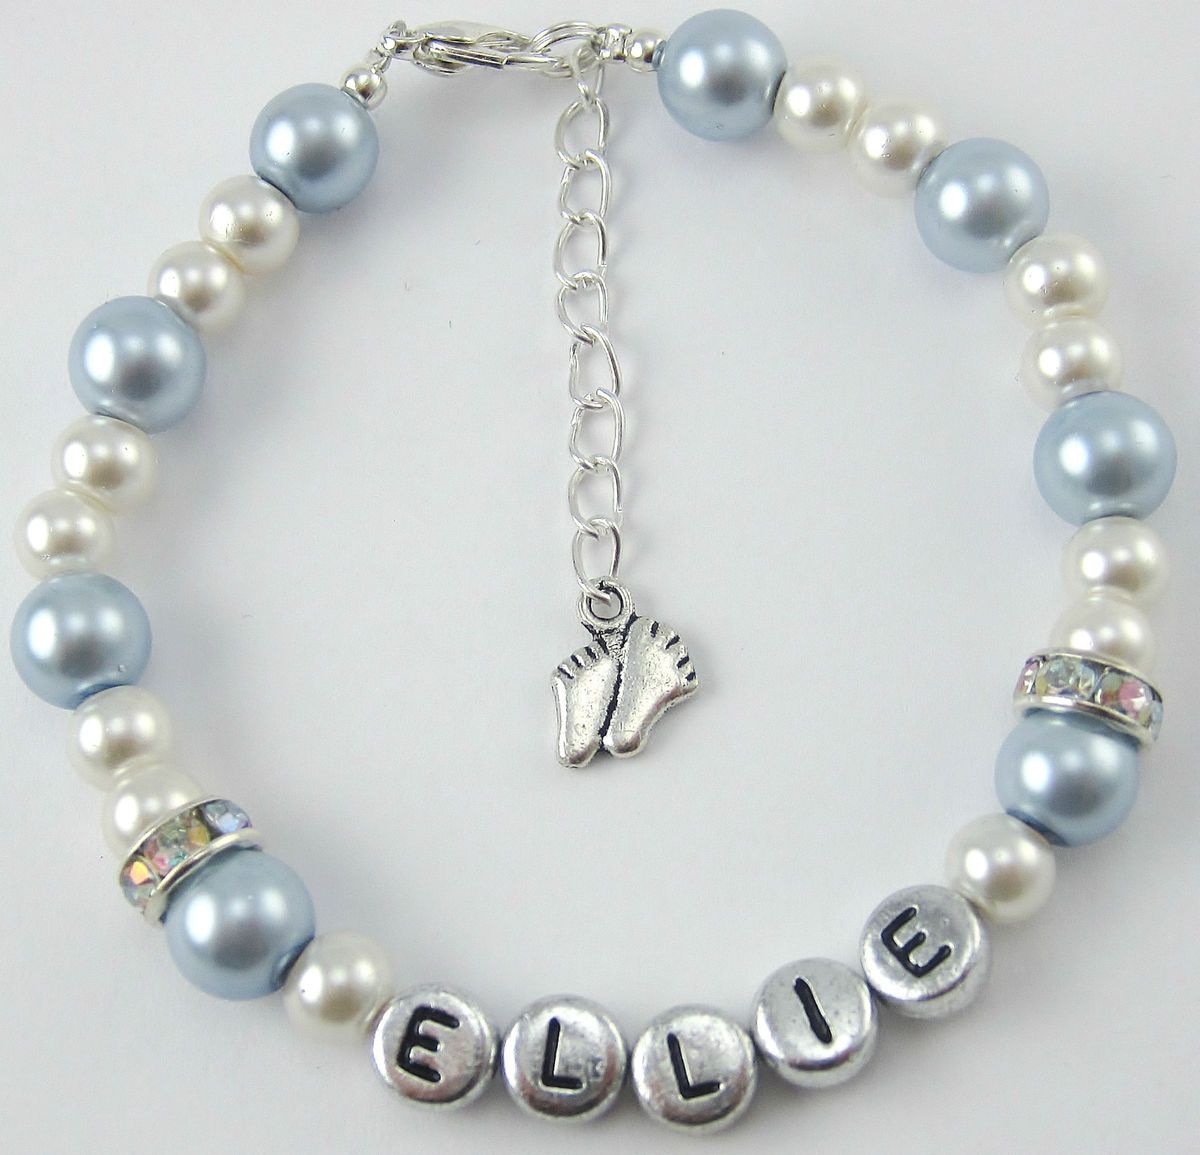   New Born Baby Blue Boy Girl Shower Charm Bracelet Gift Bag UK